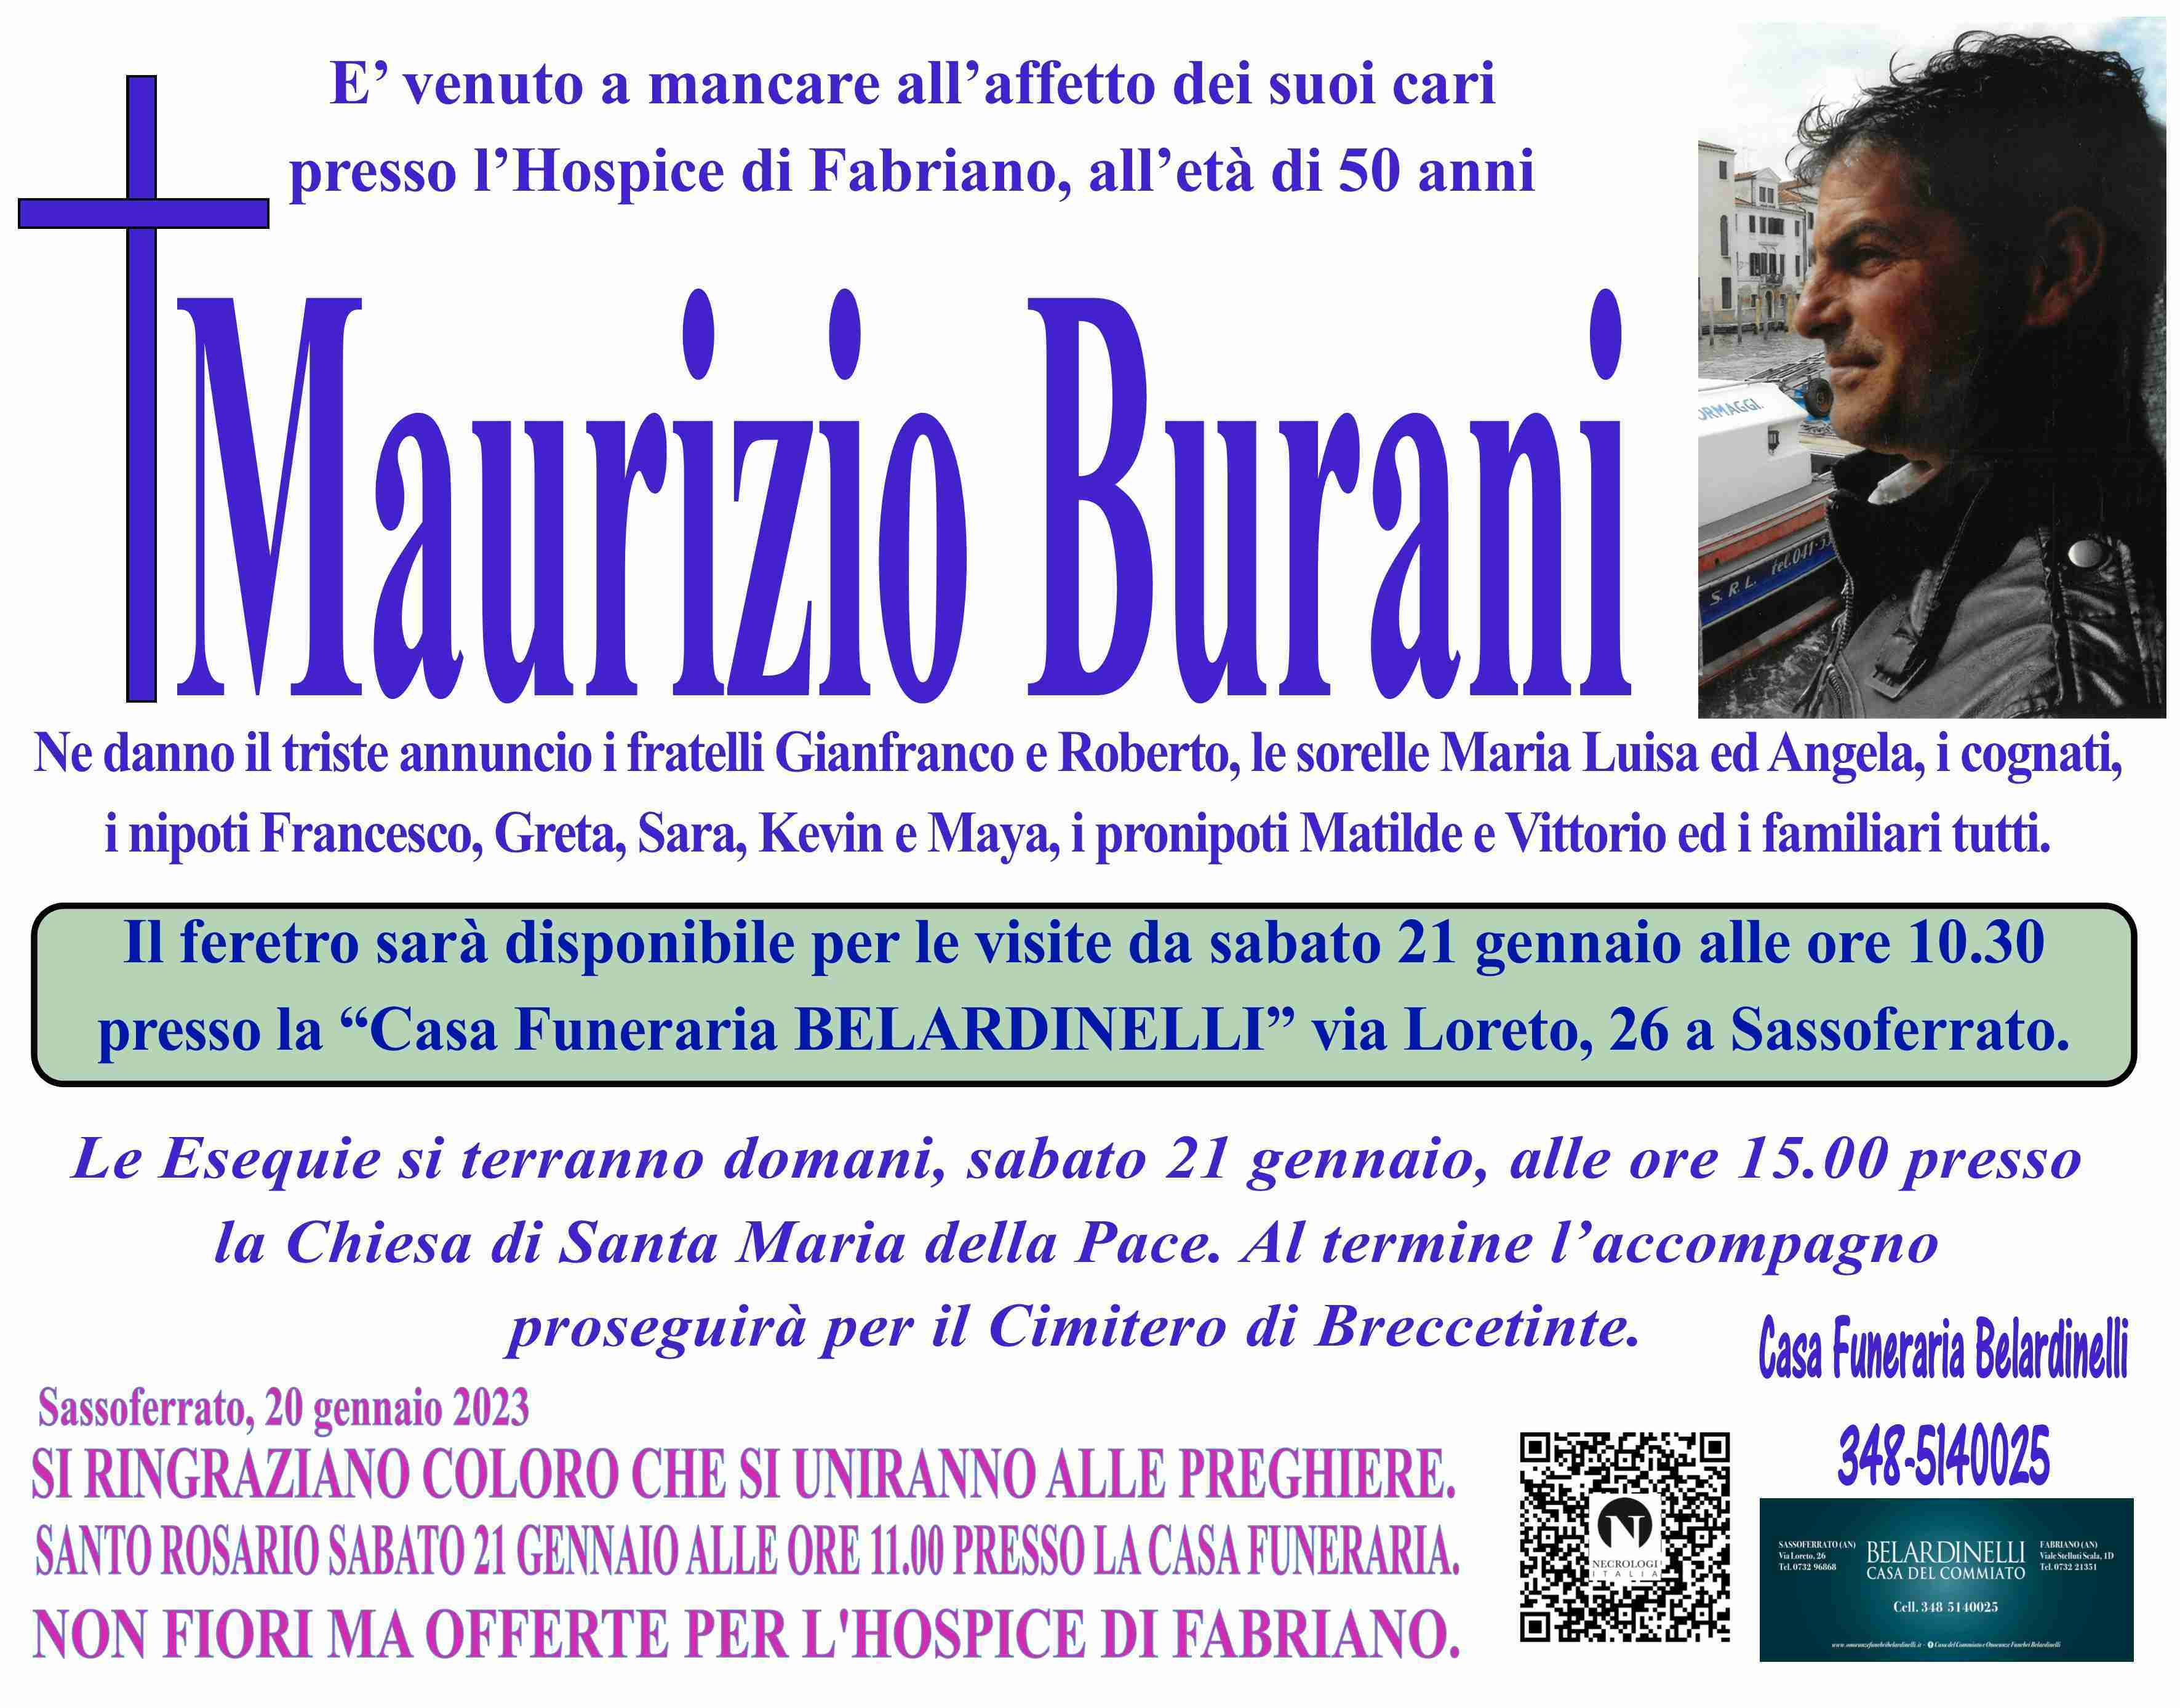 Maurizio Burani